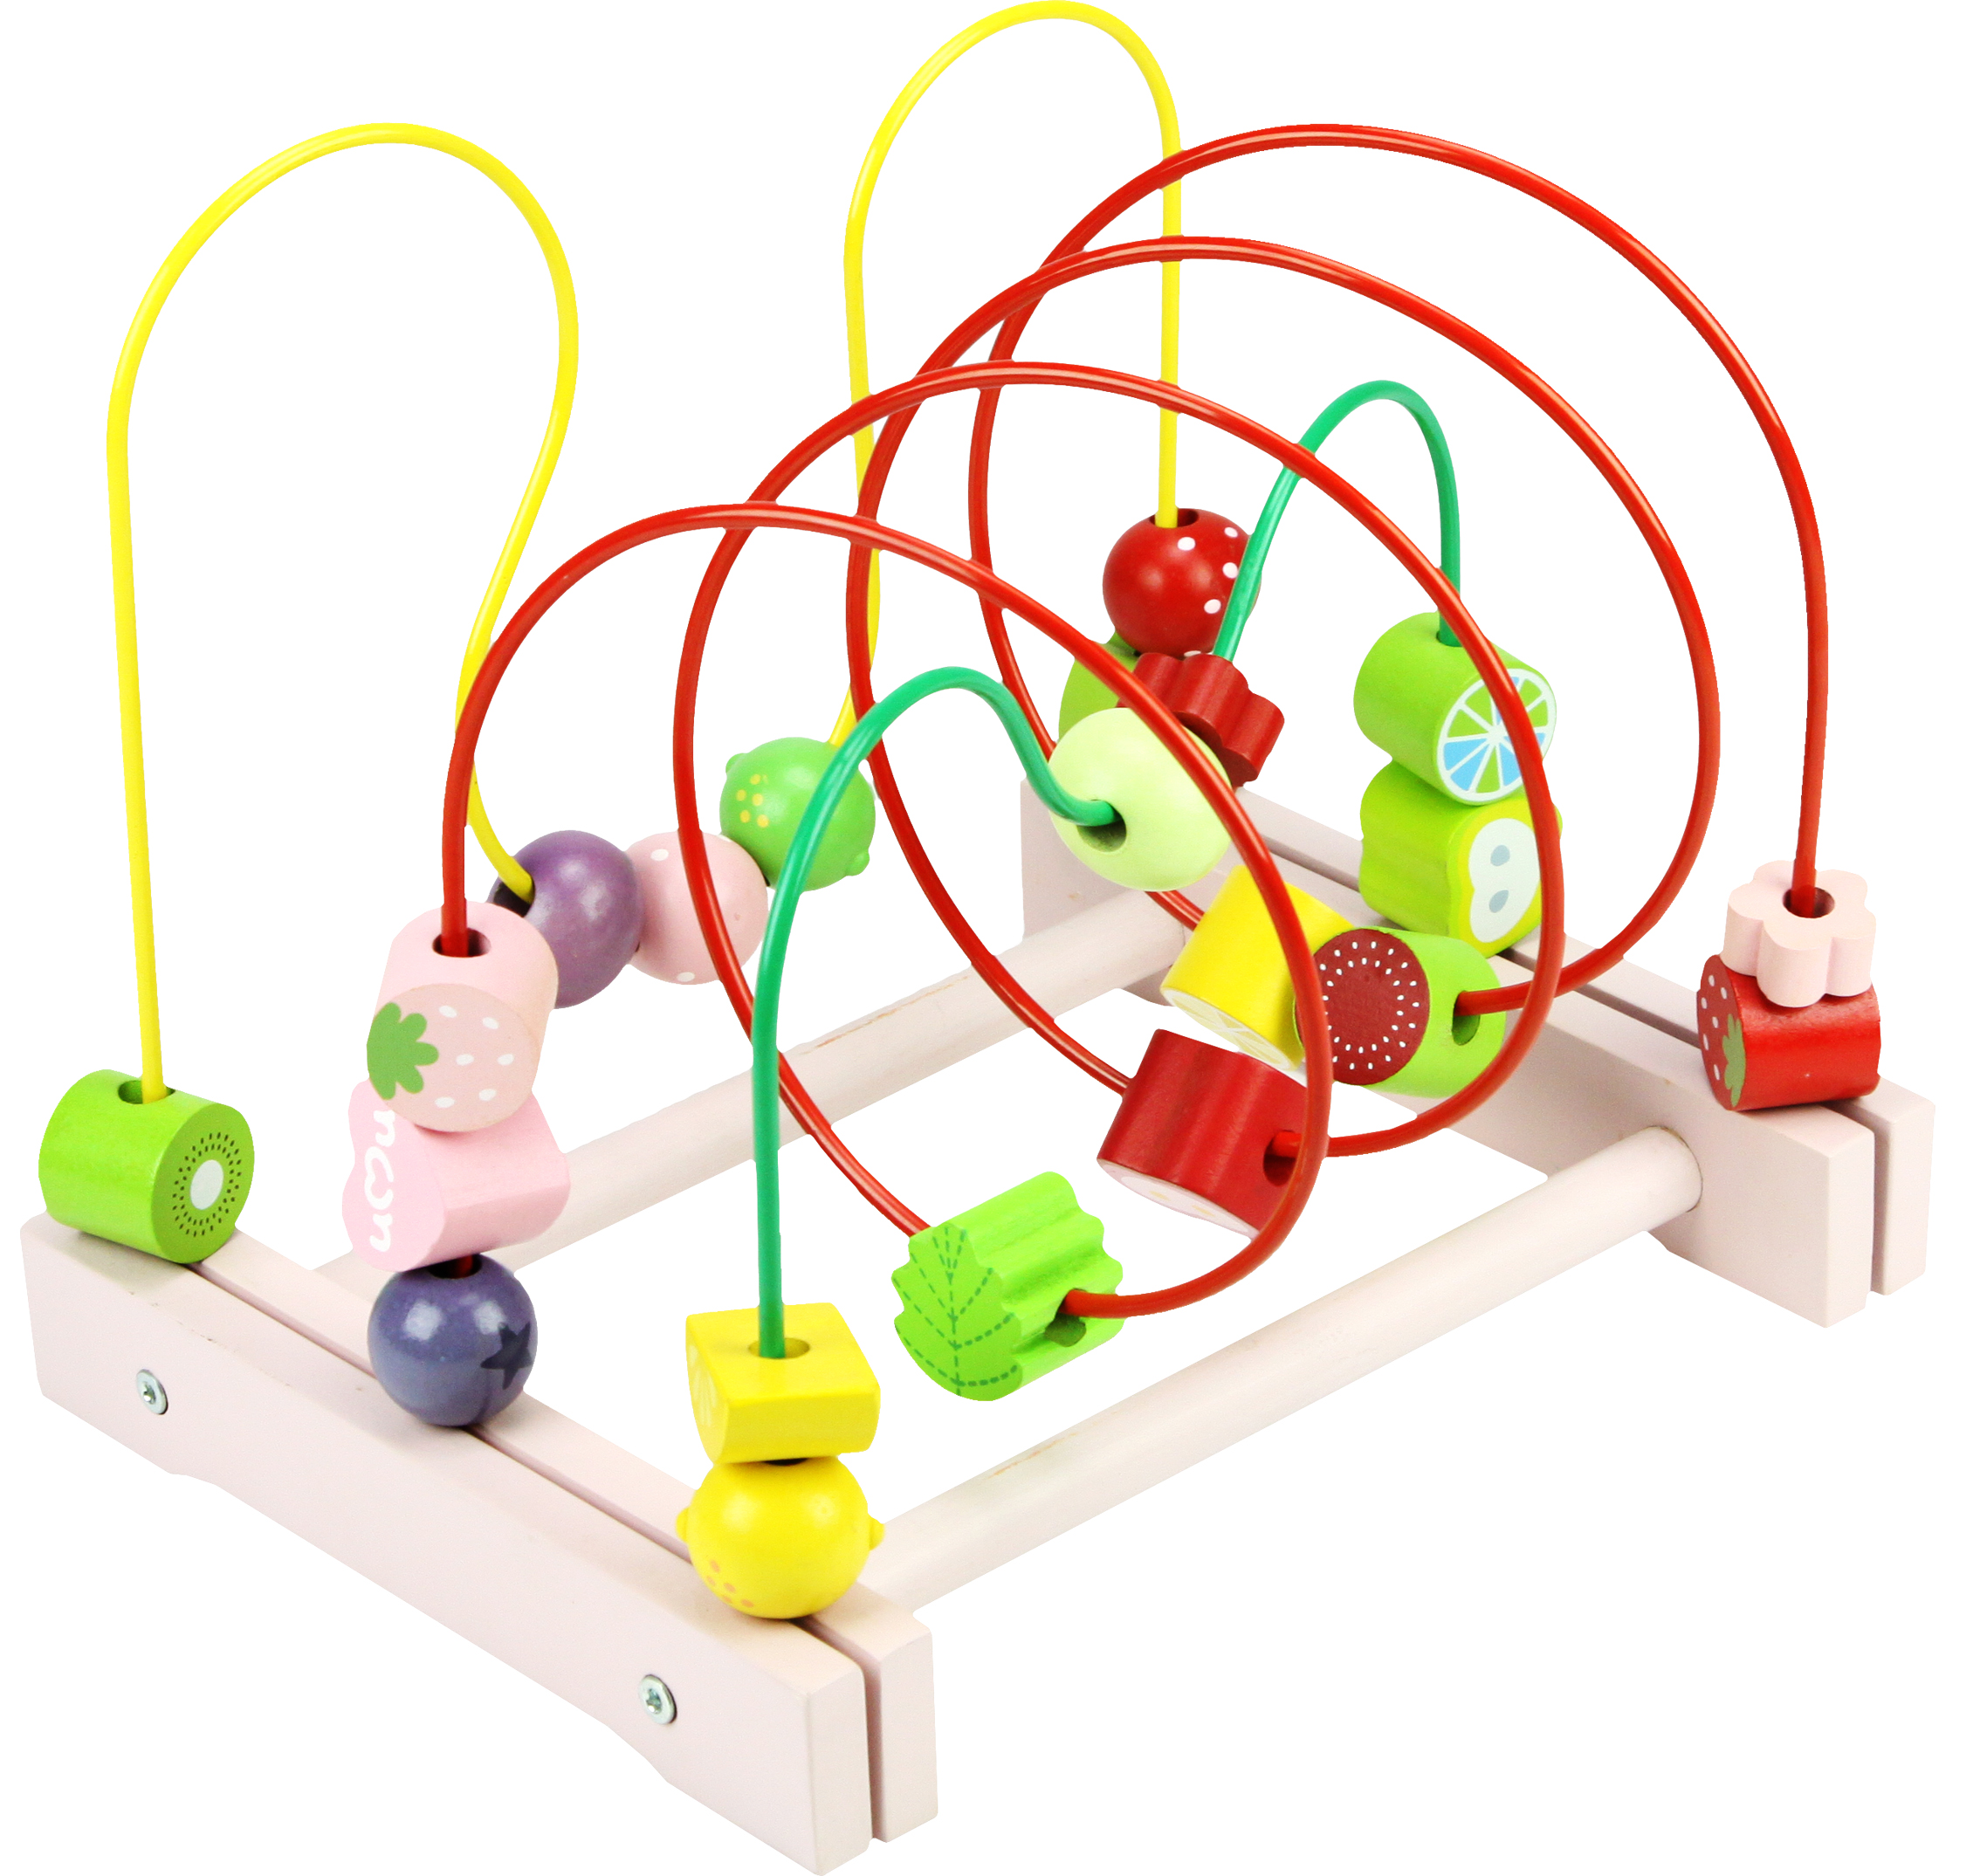 优木木制儿童玩具串珠绕珠游戏手眼协调精细动作锻炼智力开发正品折扣优惠信息